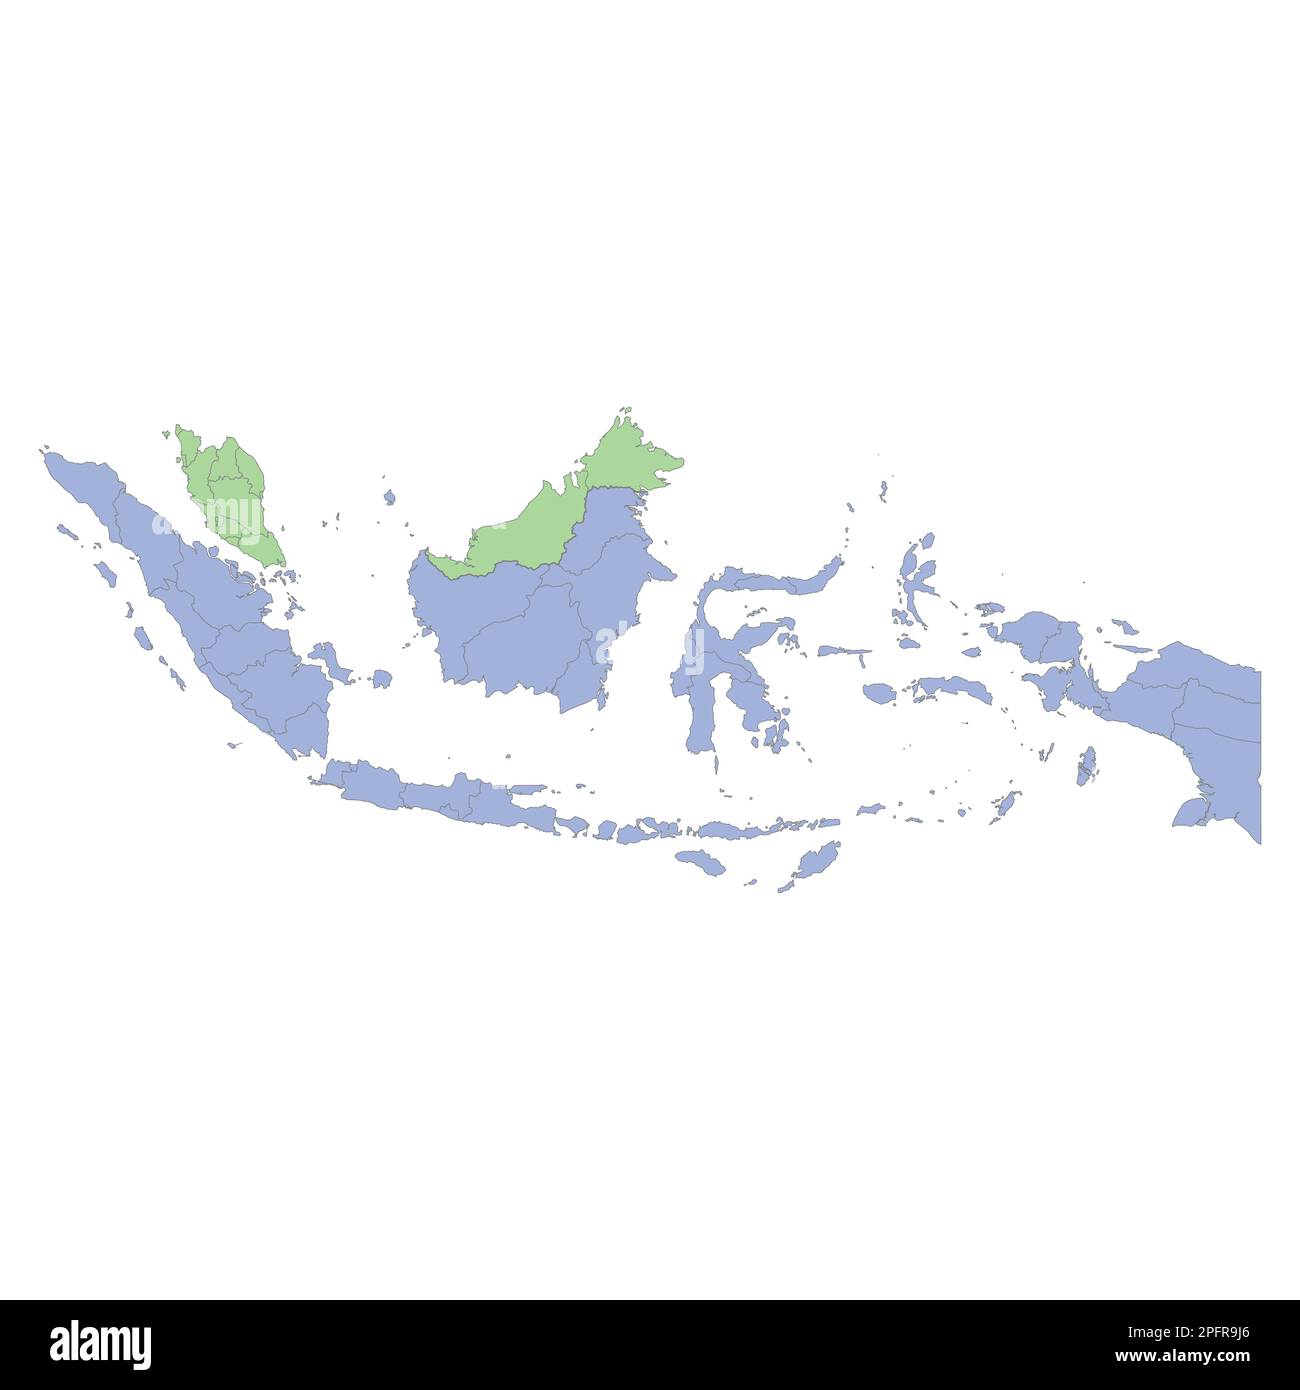 Mappa politica di alta qualità dell'Indonesia e della Malesia con i confini delle regioni o delle province. Illustrazione vettoriale Illustrazione Vettoriale